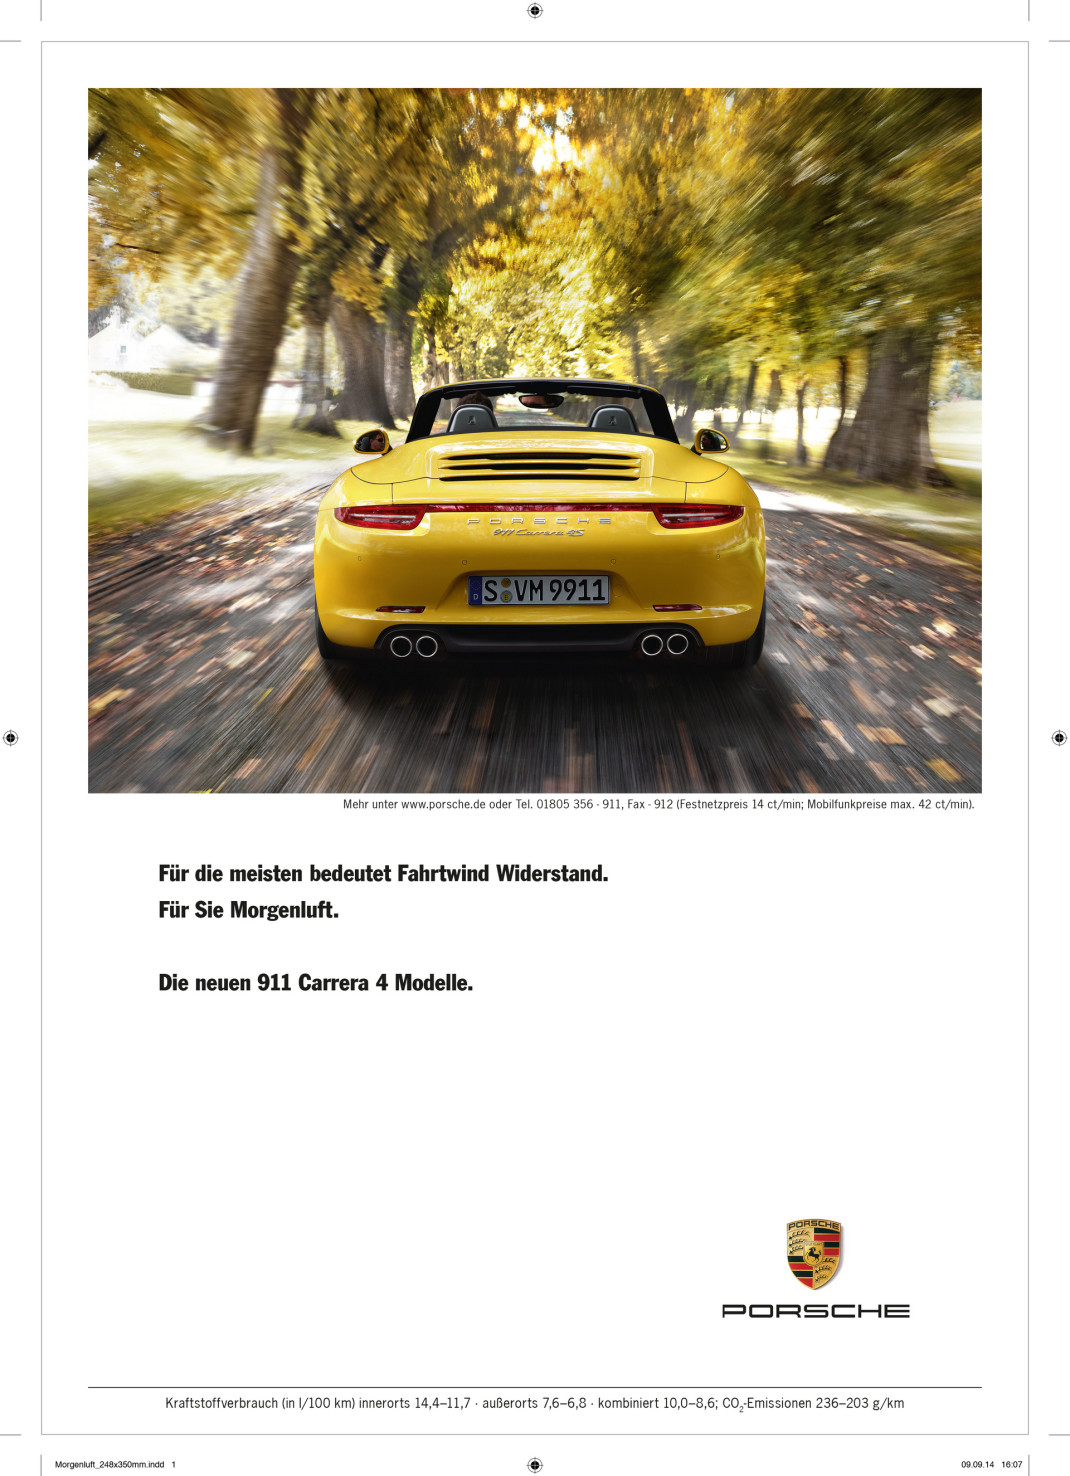 Porsche ad © Dr. Ing. h.c. F. Porsche AG